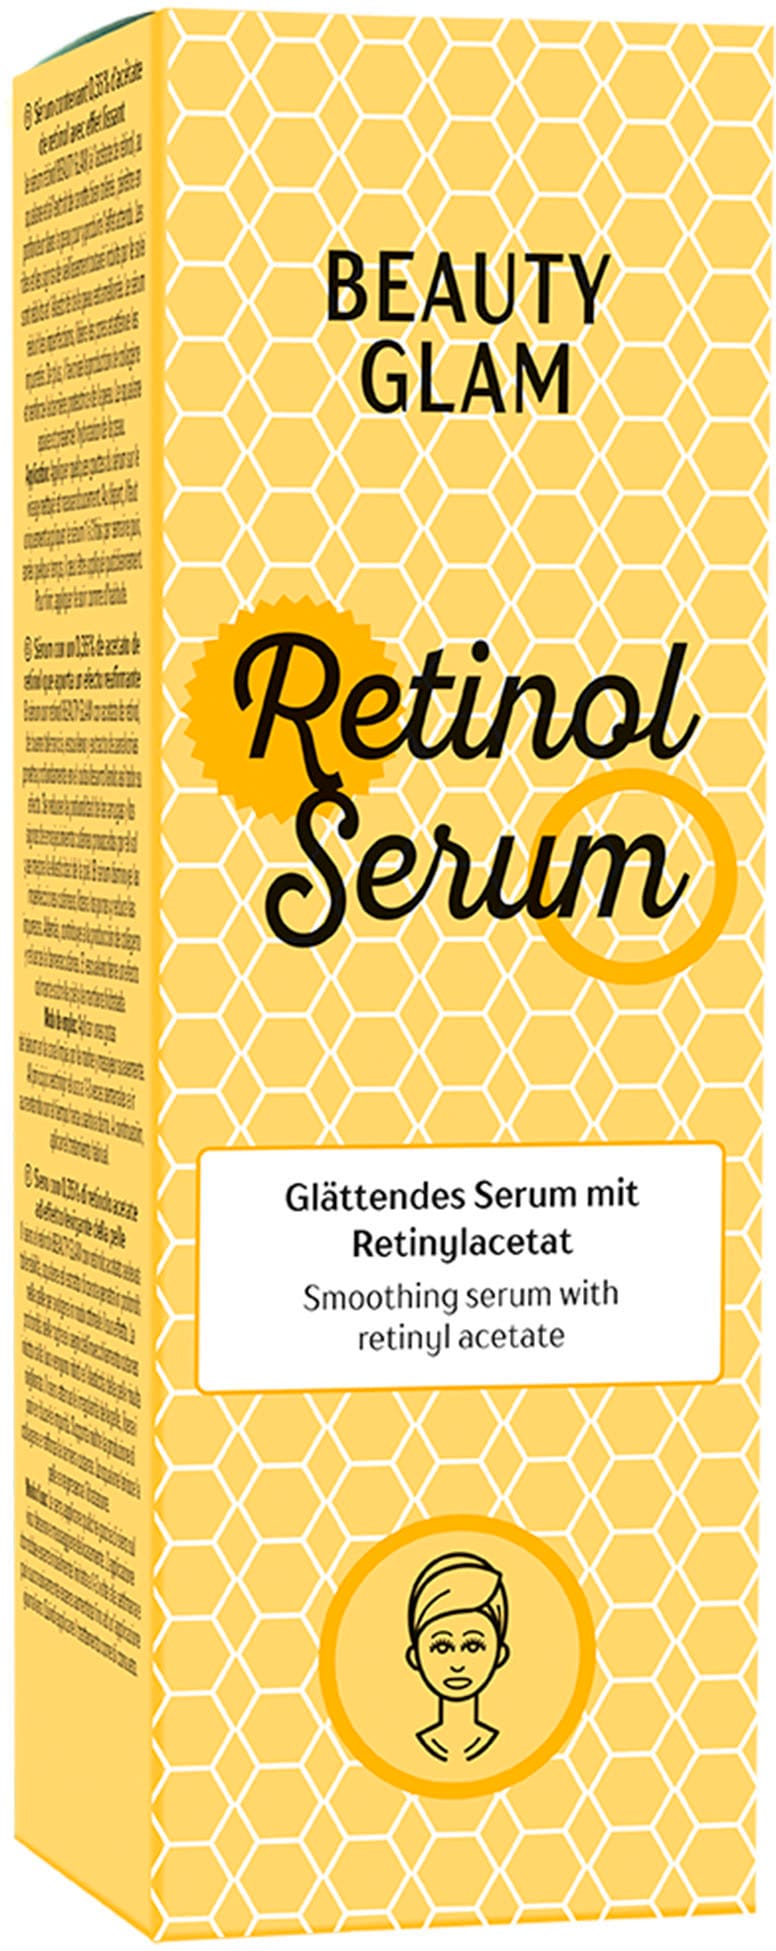 »Retinol Online im Gesichtsserum OTTO GLAM Serum« BEAUTY Shop